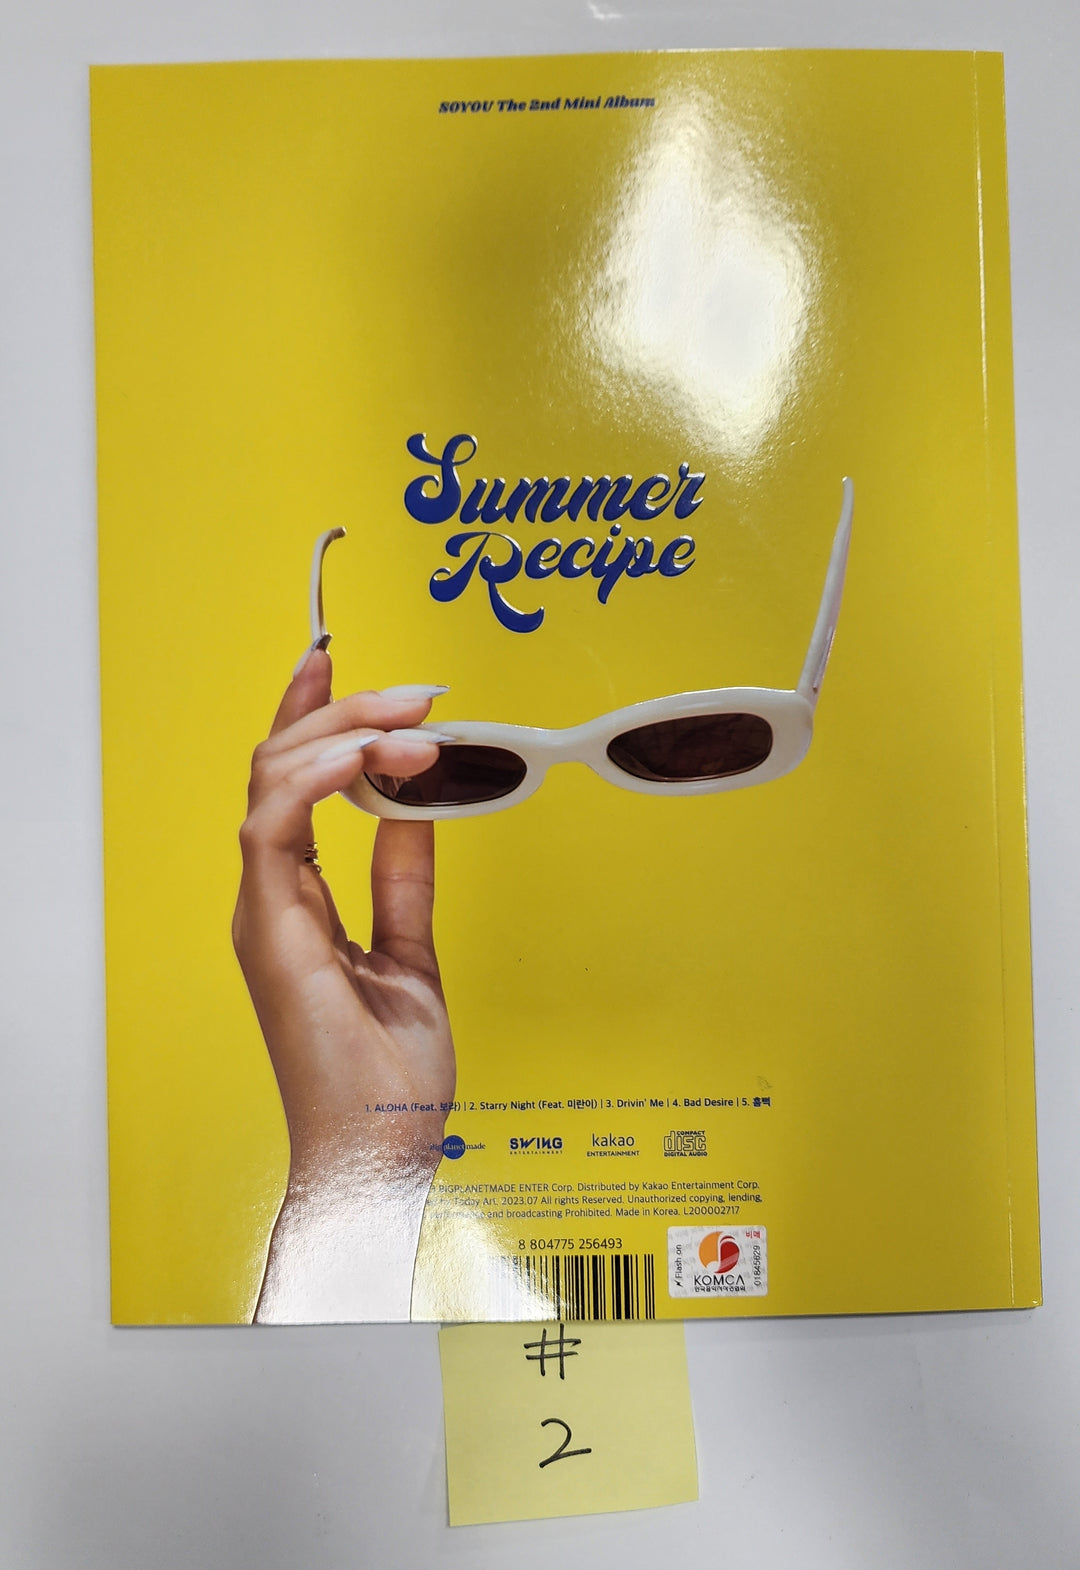 ソユ「Summer Recipe」 - 直筆サイン入りプロモーションアルバム